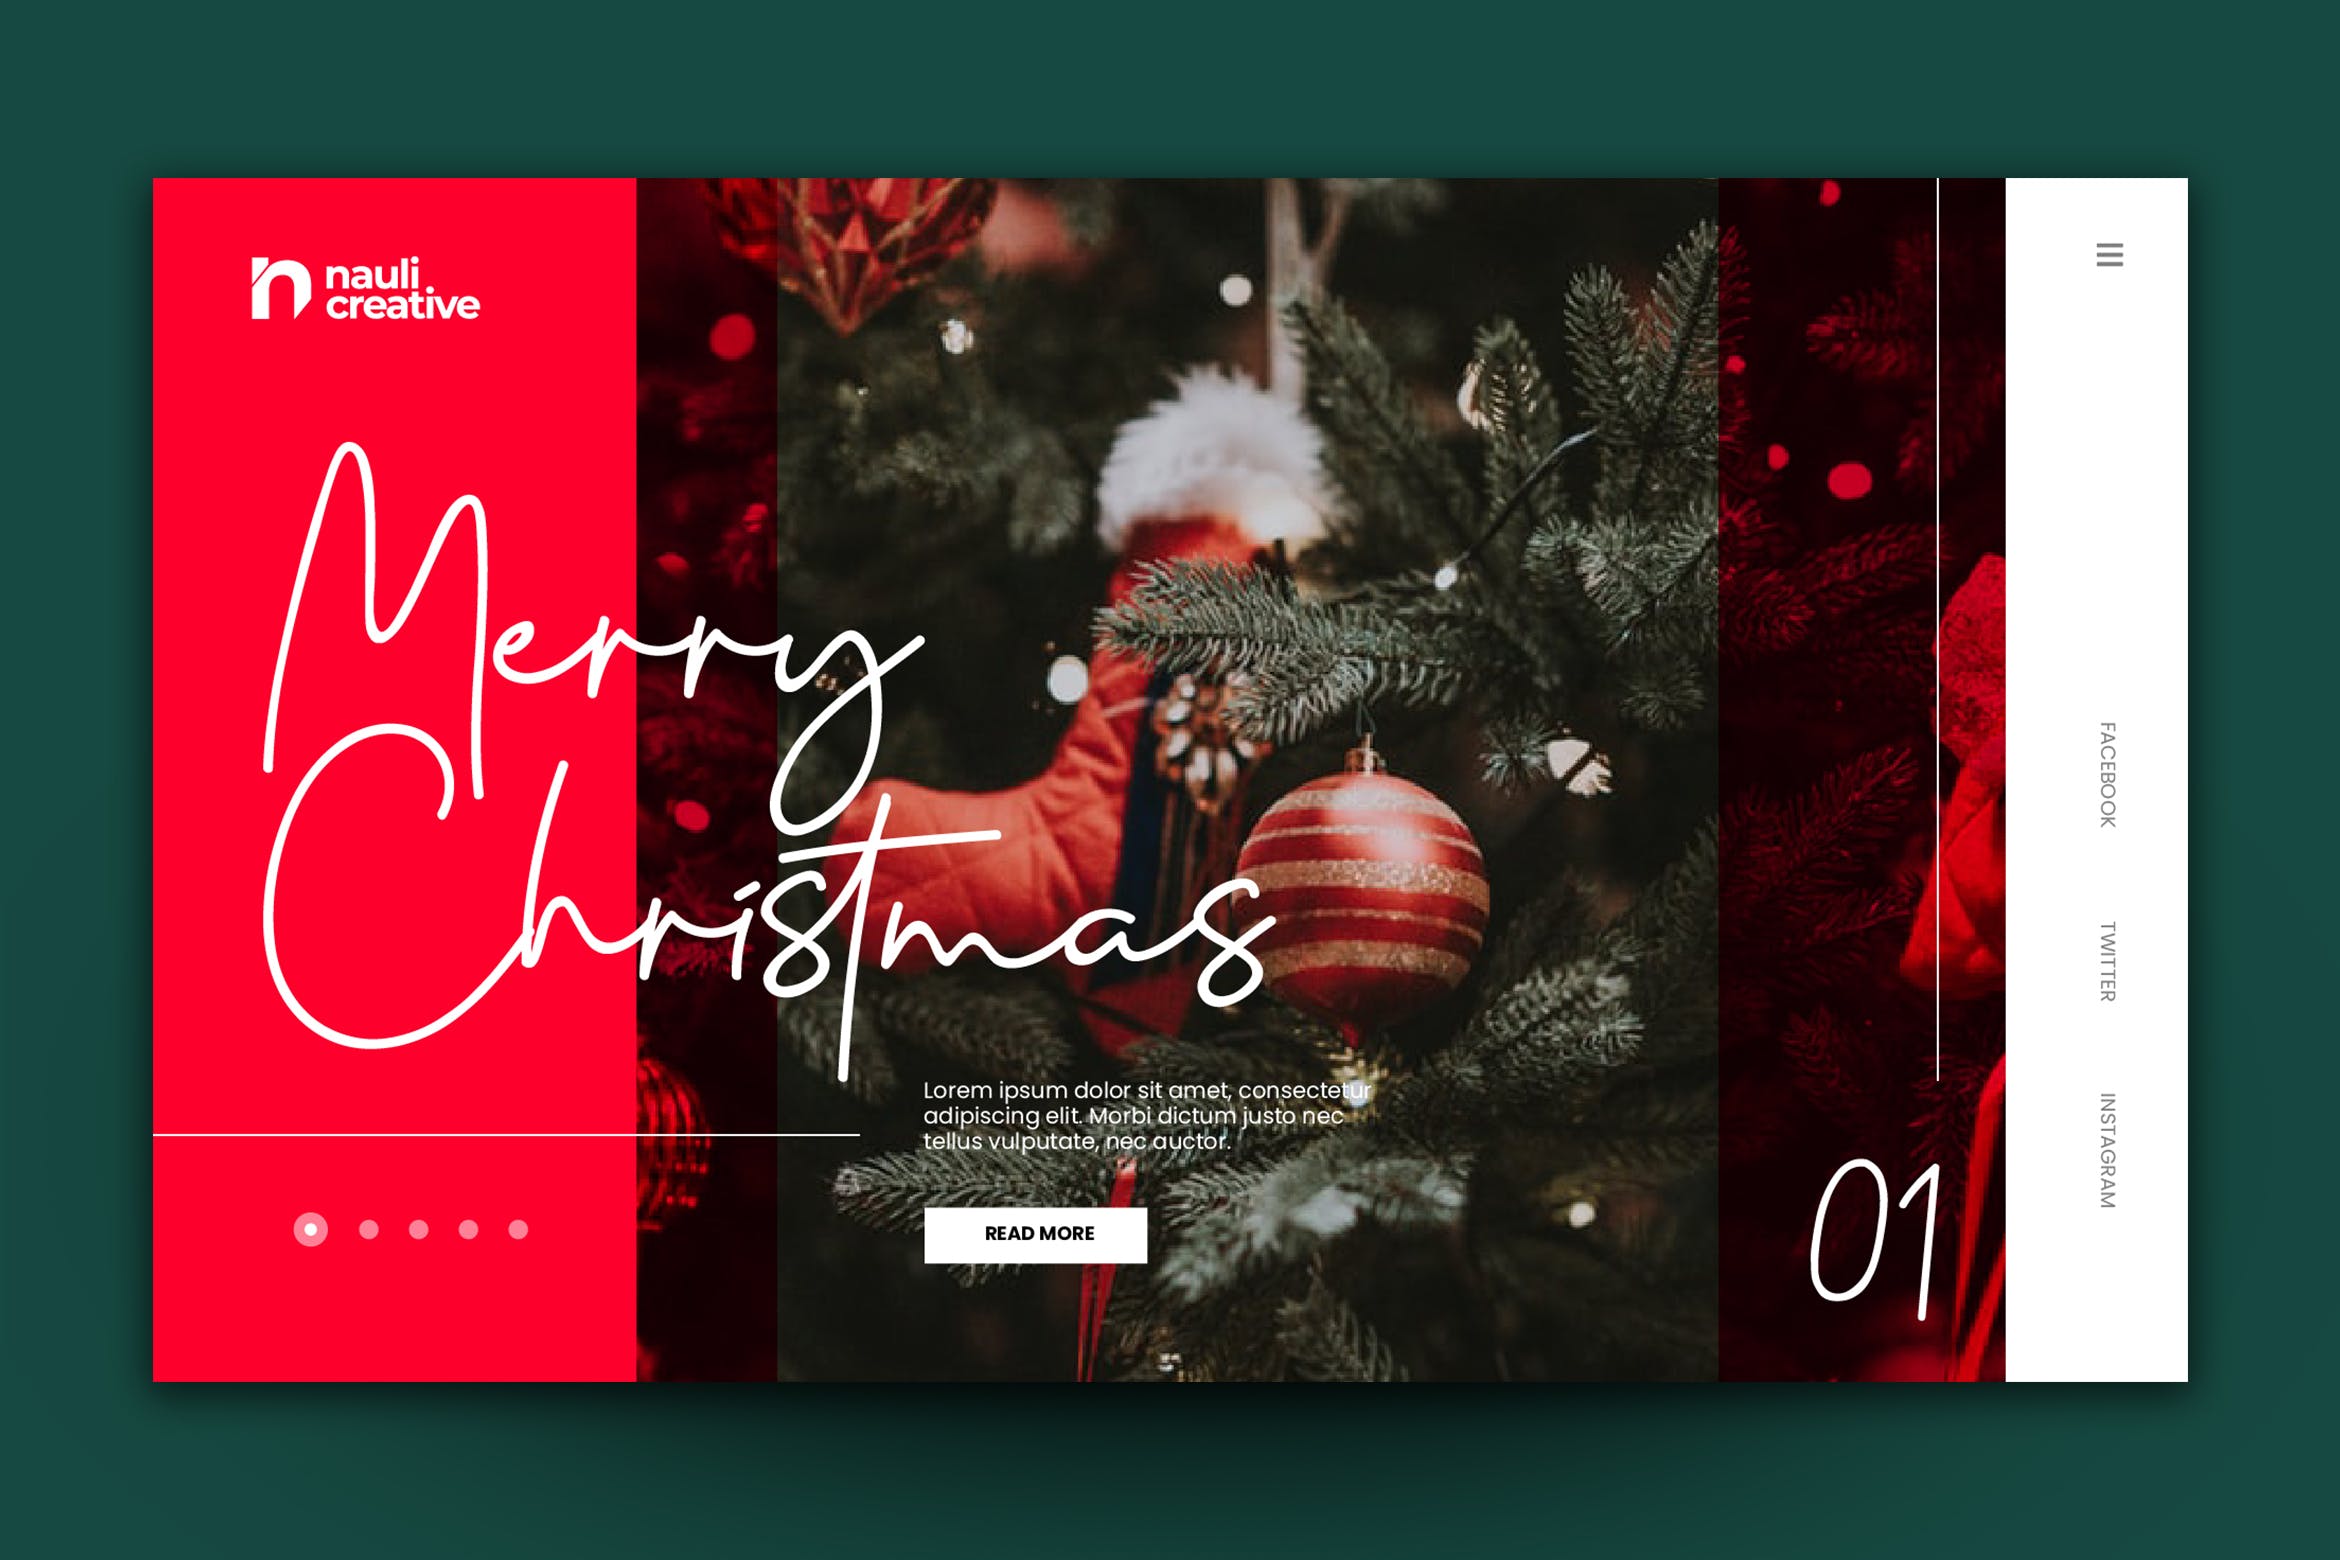 圣诞节主题背景网站着陆页设计AI/PSD模板v2 Merry Christmas Web Landing Page AI and PSD Vol.2插图